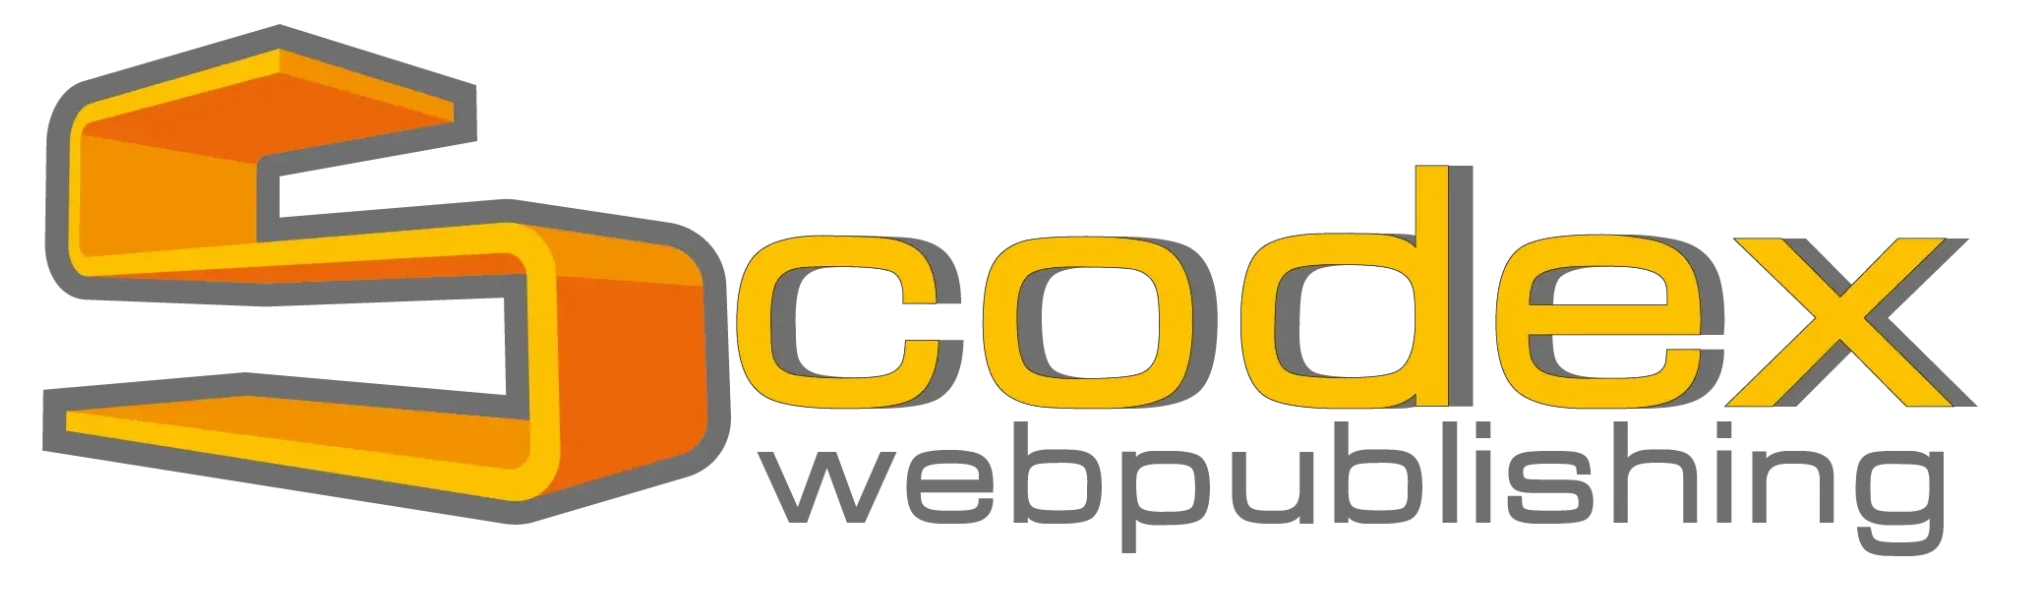 Scodex - Online Marketing und Webdesign